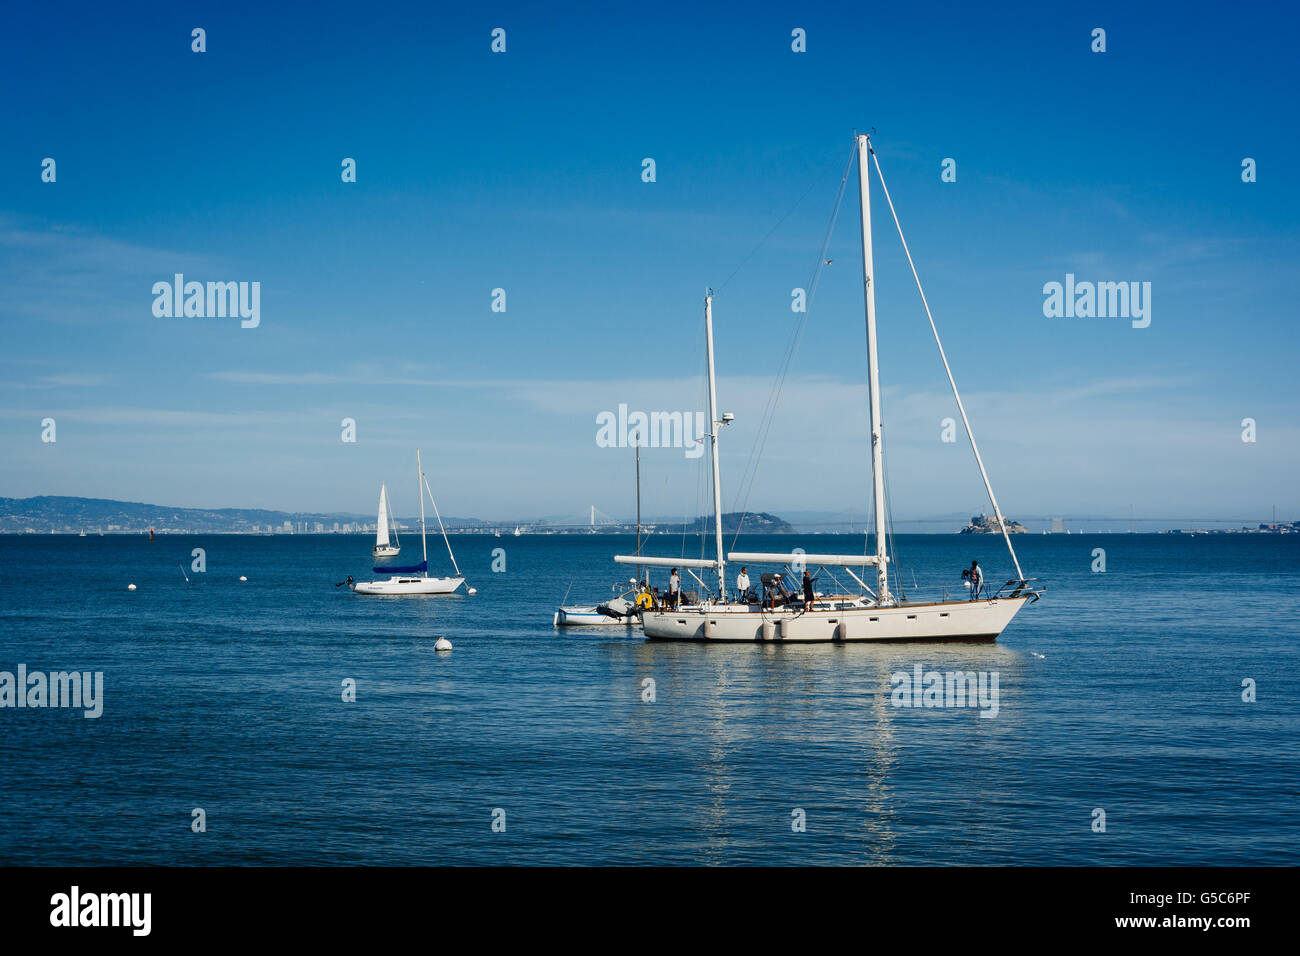 Boats in San Francisco Bay, in Sausalito, California. Stock Photo